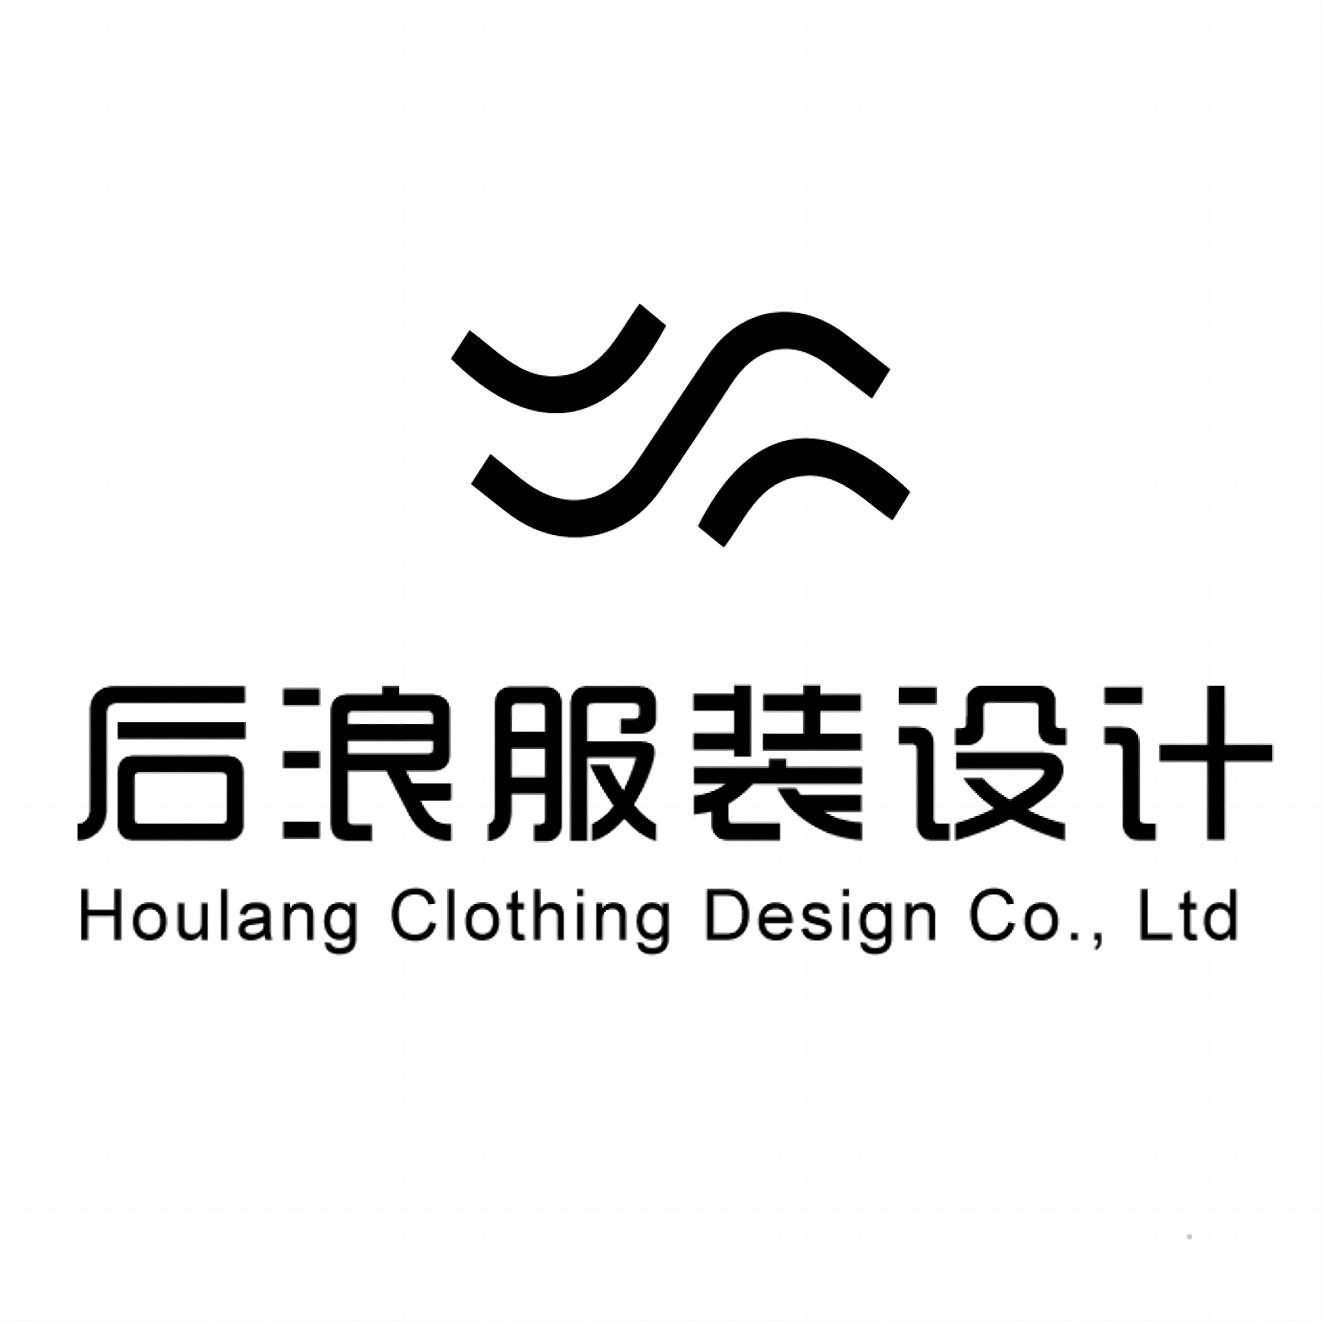 后浪服装设计 HOULANG CLOTHING DESIGN CO.,LTD